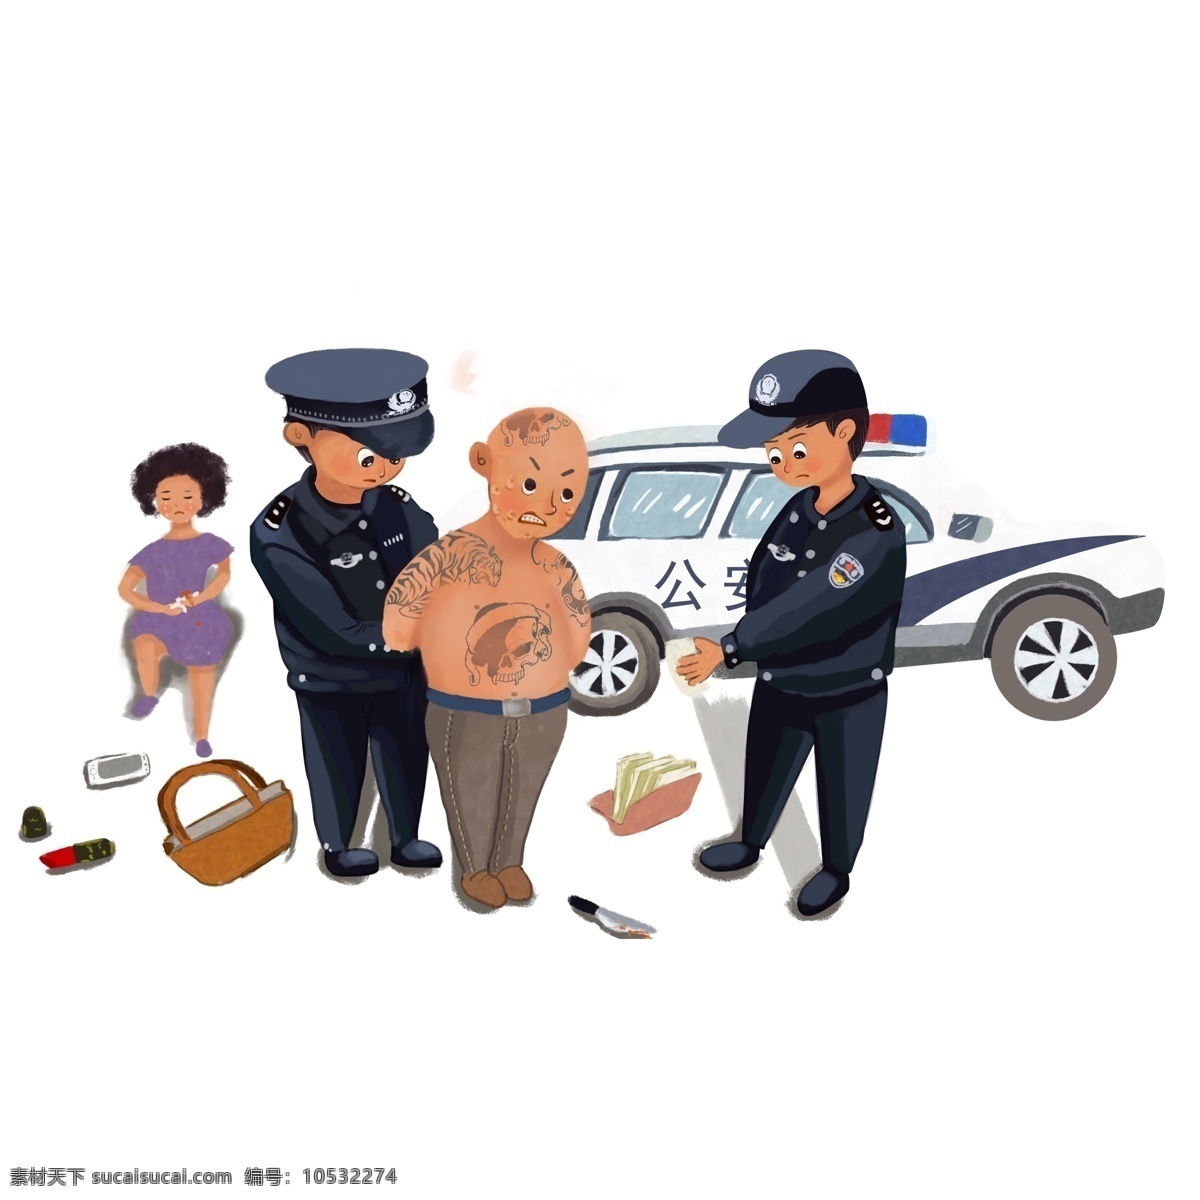 警察 抓 小偷 漫画 创意 人物 插画 抢劫犯 警车